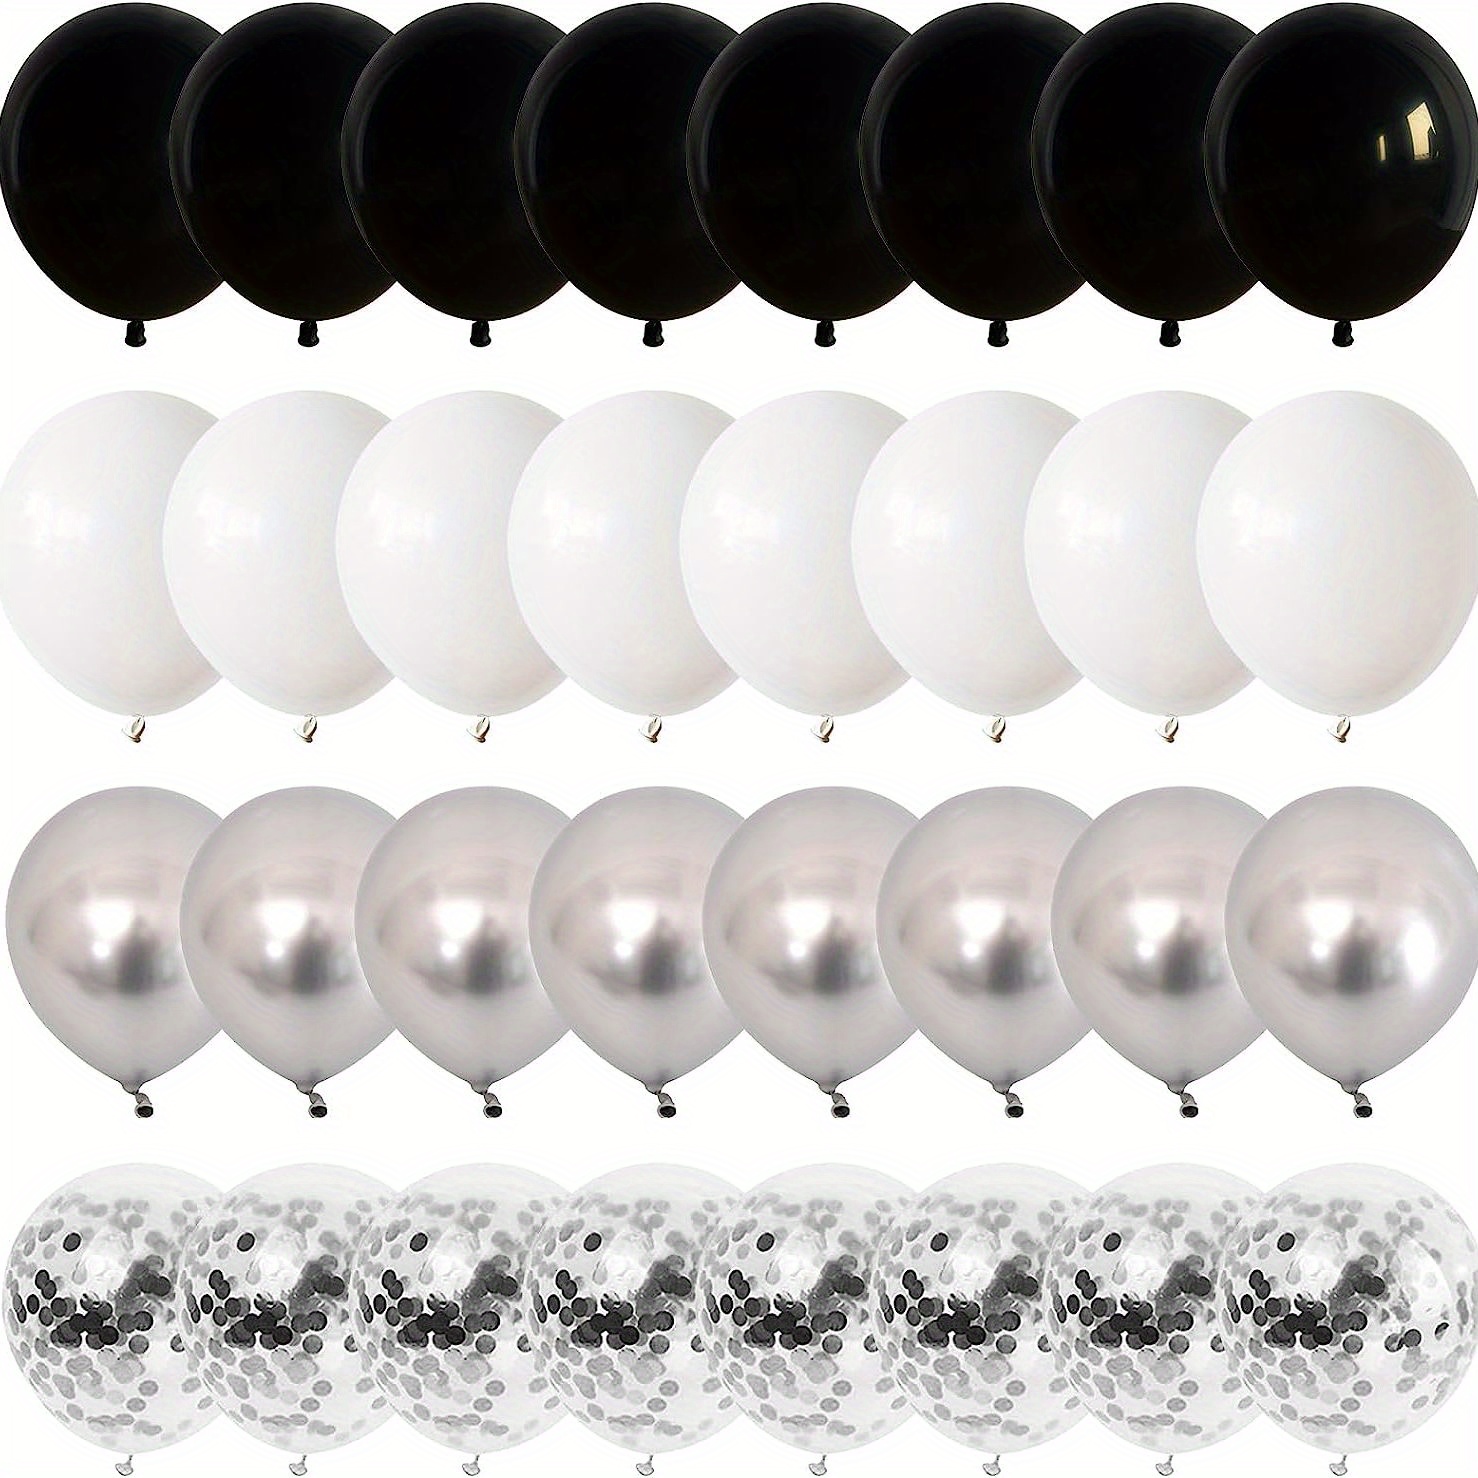 Globos negros y plateados, 60 globos plateados metálicos negros y blancos  de 12 pulgadas con globos de confeti plateados, globos de látex de helio